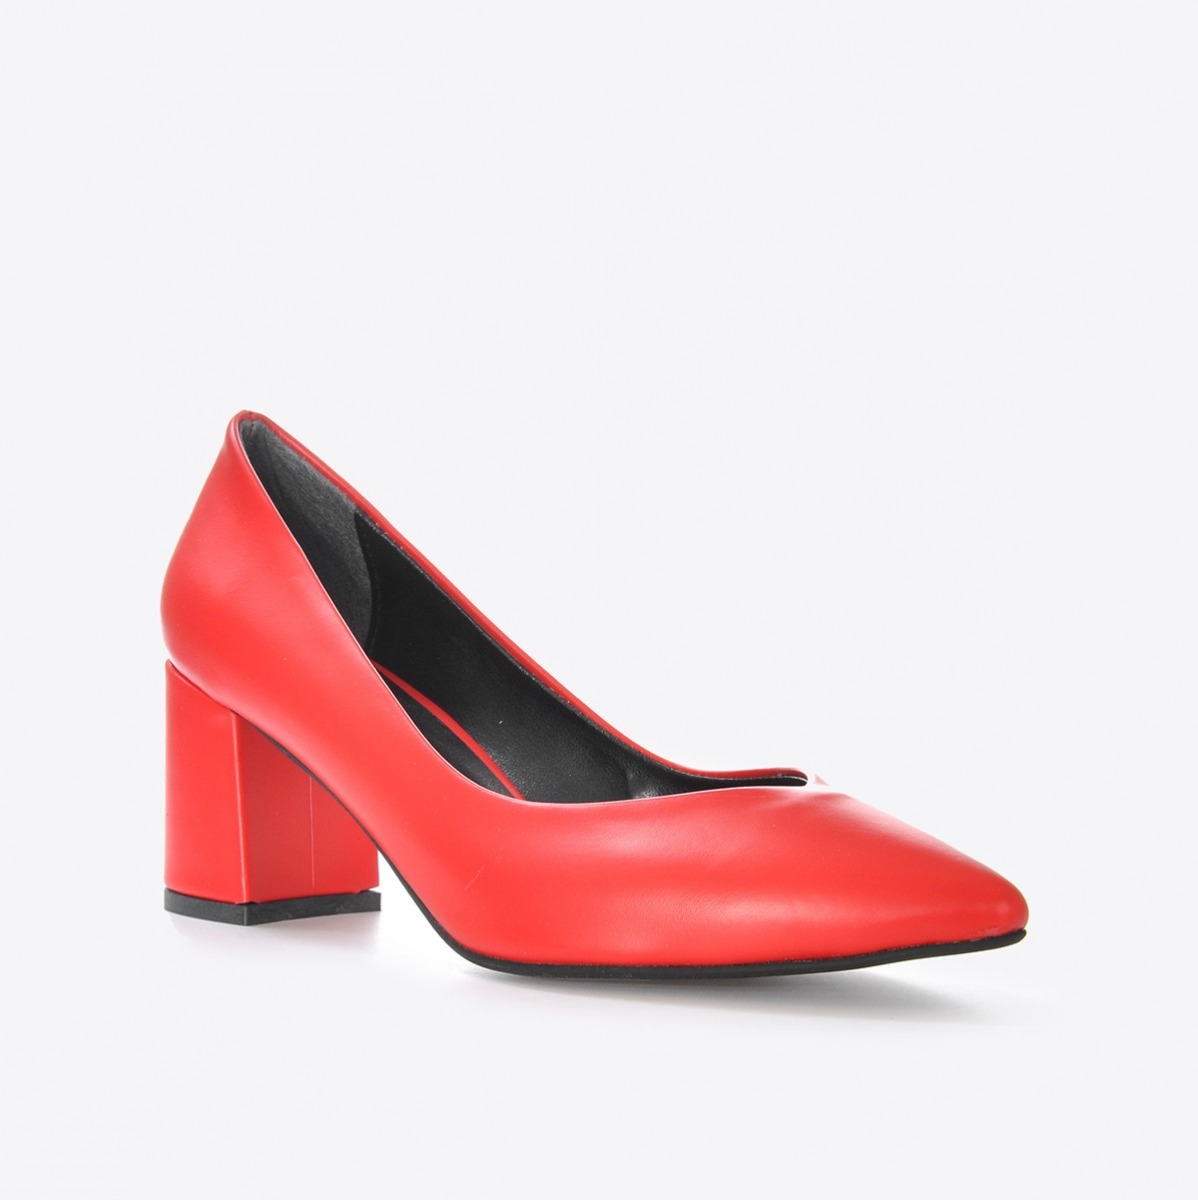 Flo Kadın Kırmızı Klasik Topuklu Ayakkabı VZN21-002Y. 1